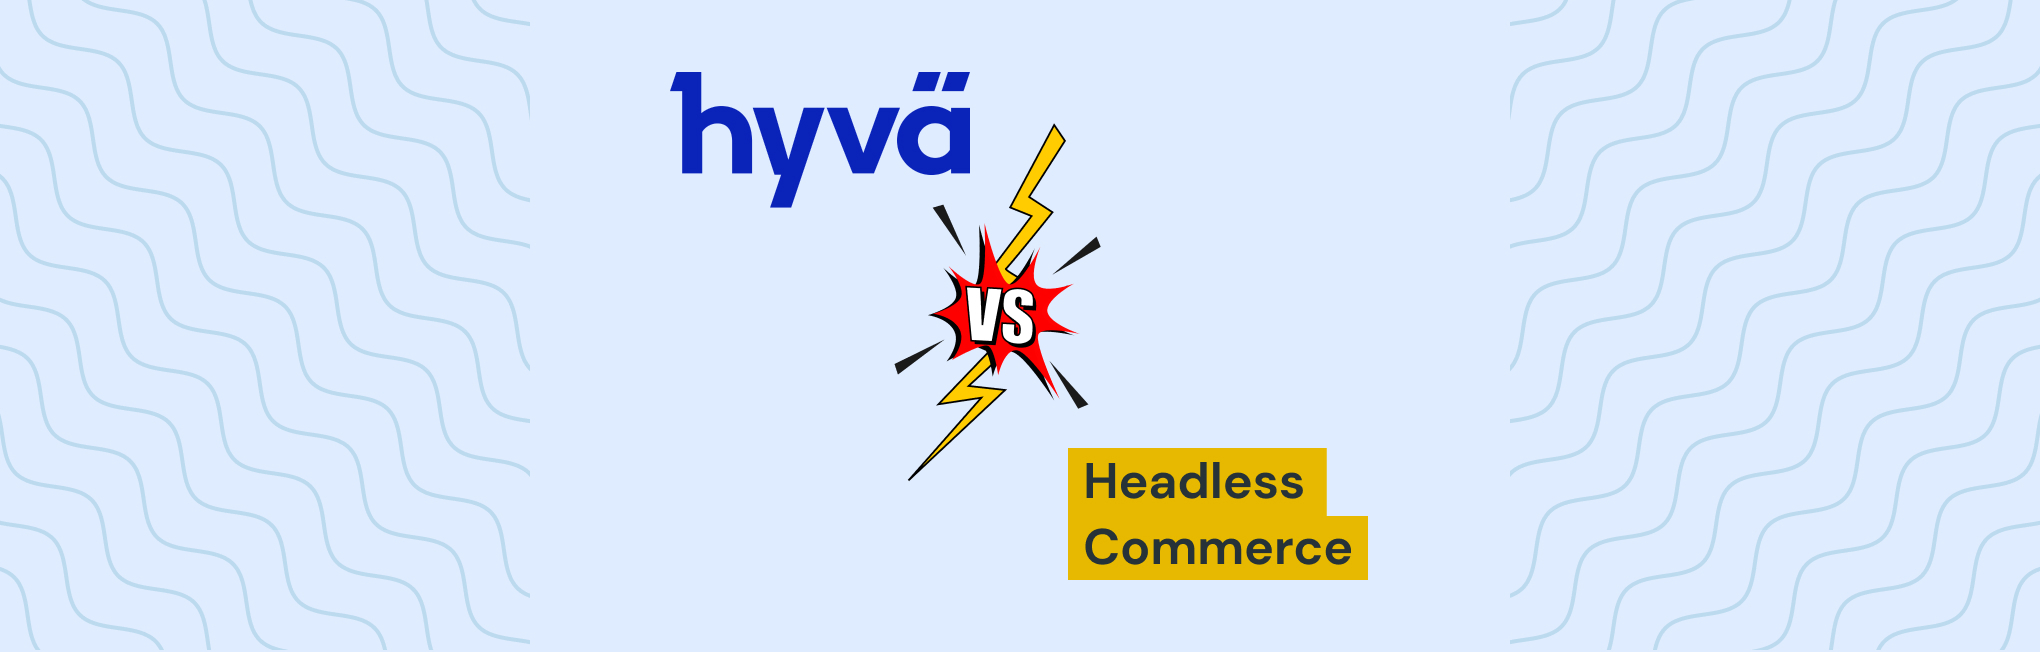 Magento Hyva vs. headless